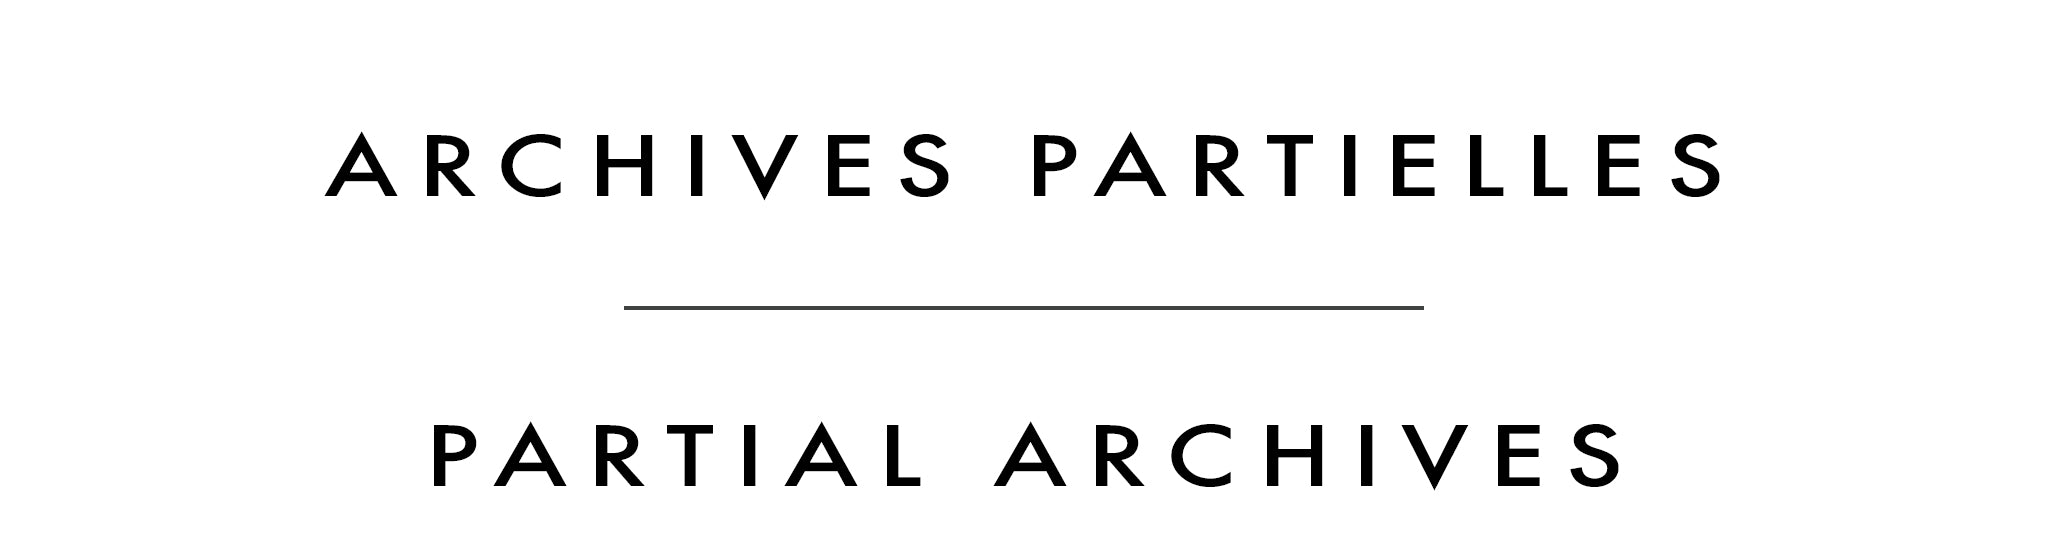 Archives partielles | Partial Archives | Dennis Magnusson